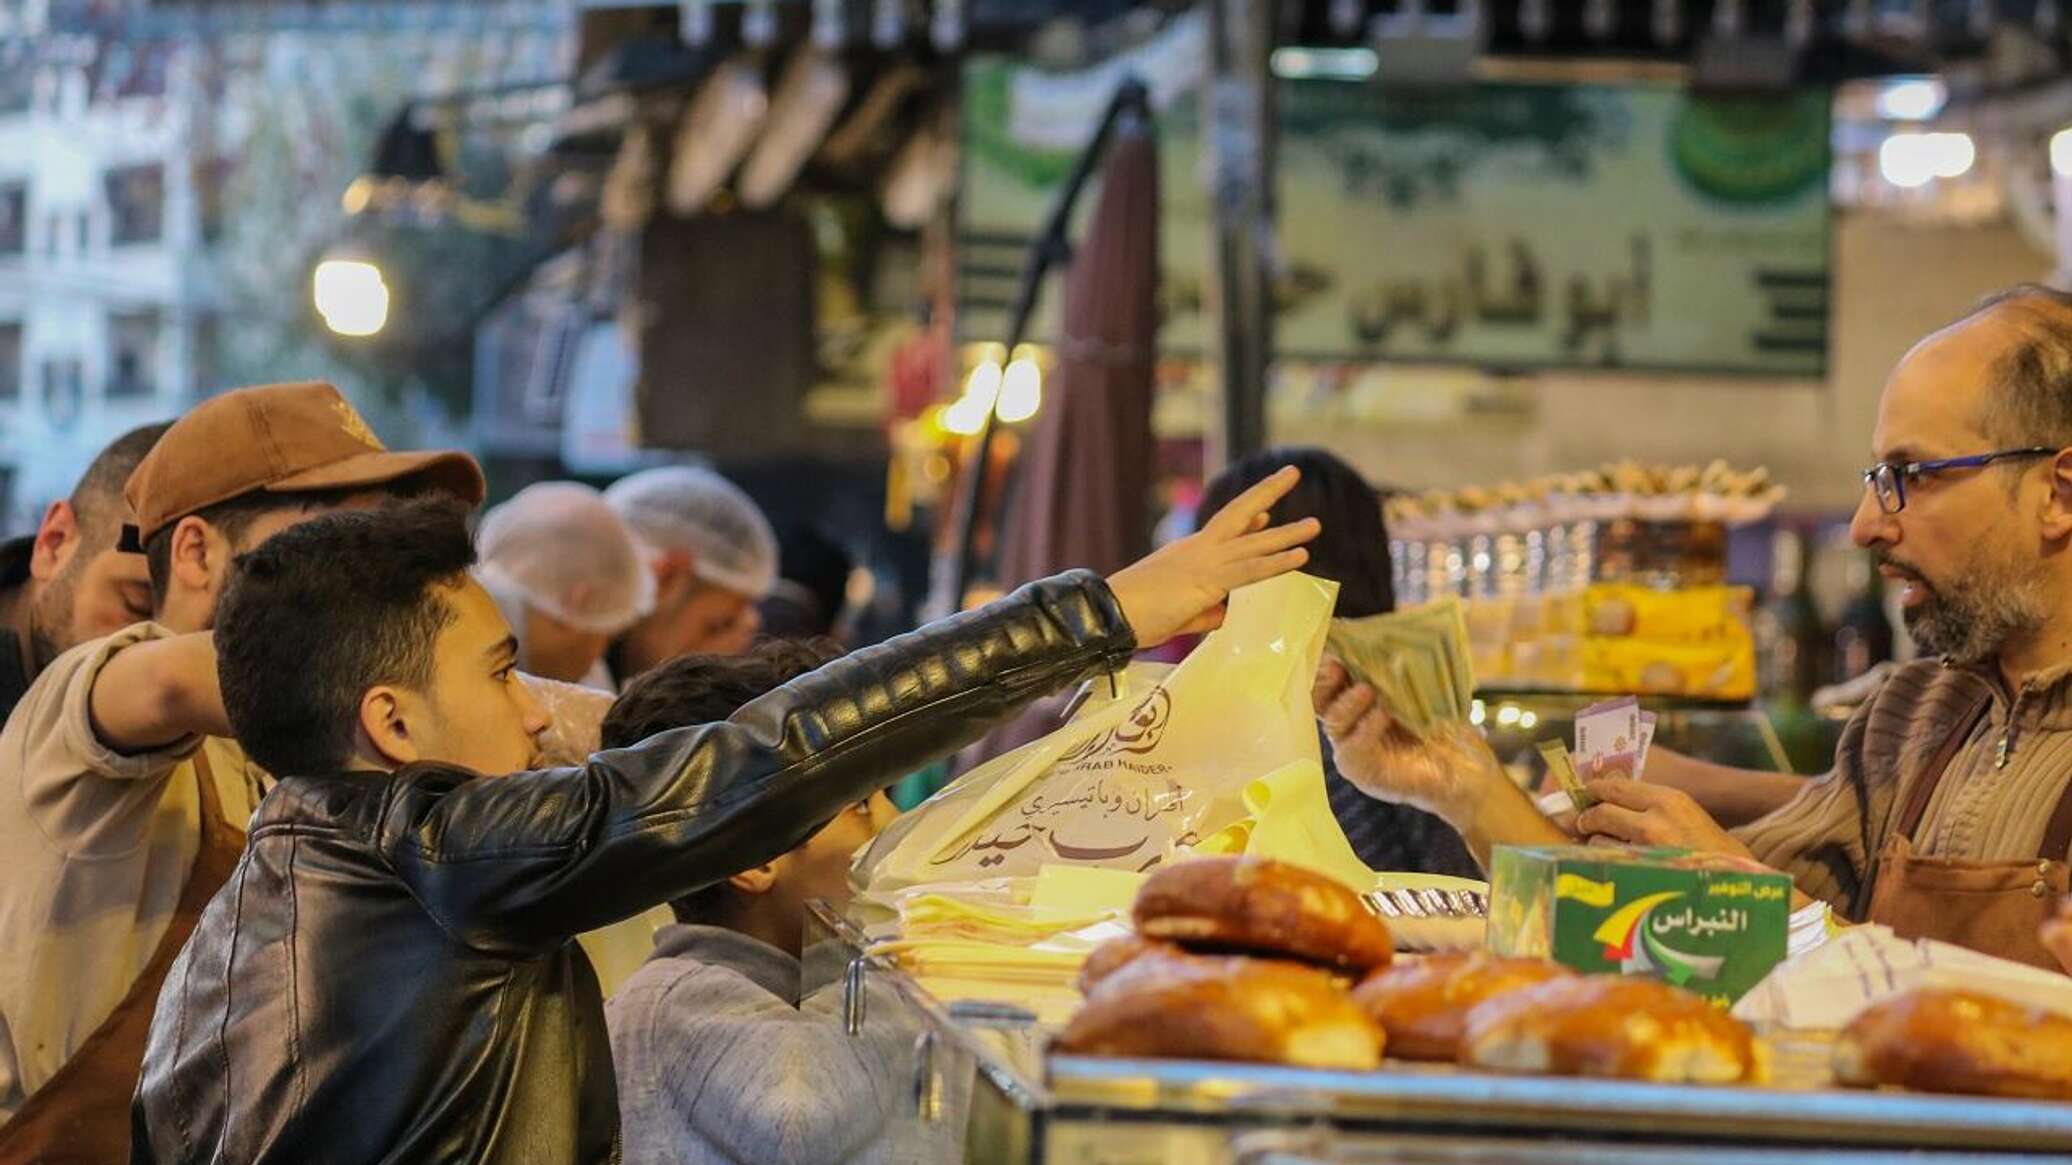 الحصار والاحتكار يدفعان أسواق رمضان بدمشق نحو الغليان.. والحكومة والصناعيون يتدخلون... فيديو